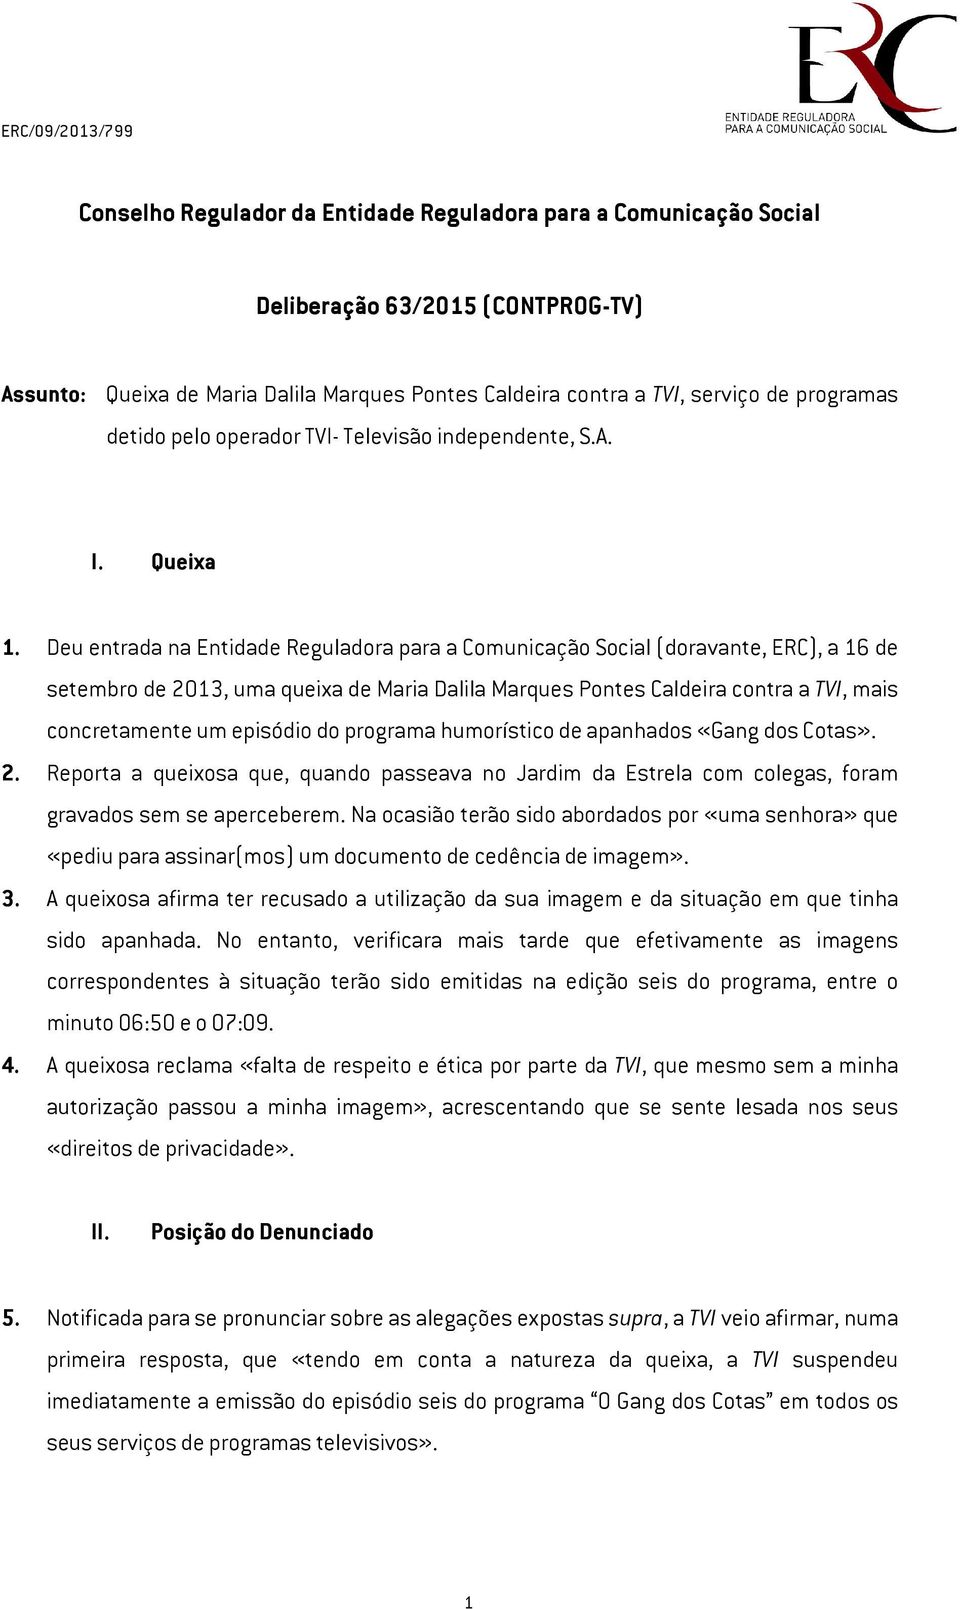 Deu entrada na Entidade Reguladora para a Comunicação Social (doravante, ERC), a 16 de setembro de 2013, uma queixa de Maria Dalila Marques Pontes Caldeira contra a TVI, mais concretamente um